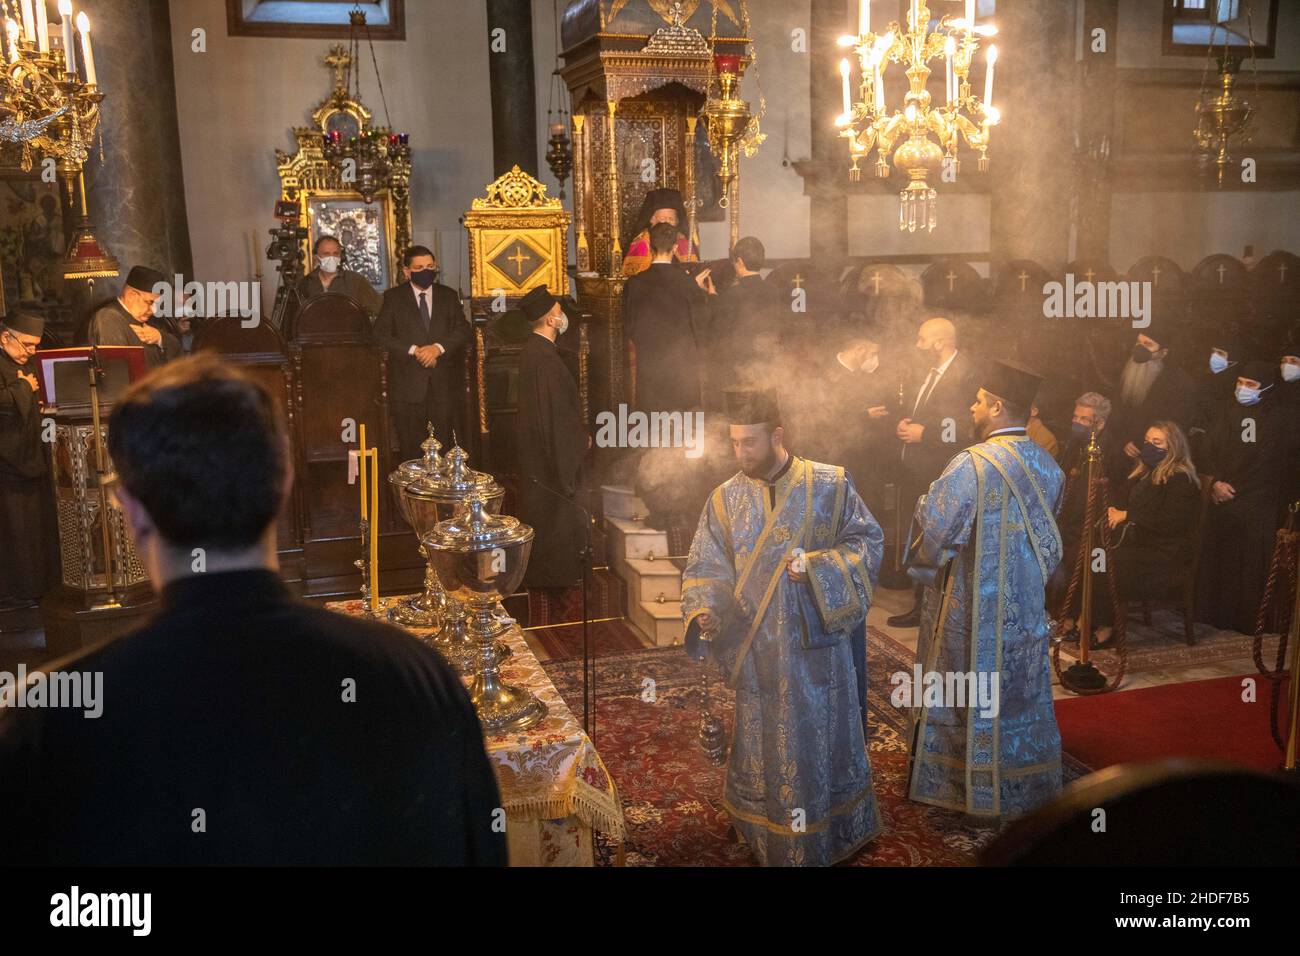 Der griechisch-orthodoxe Ökumenische Patriarch Bartholomaios I. von Konstantinopel hält die Epiphanie-Messe im Rahmen der Feierlichkeiten zum Epiphanie-Tag in der Kirche. Stockfoto